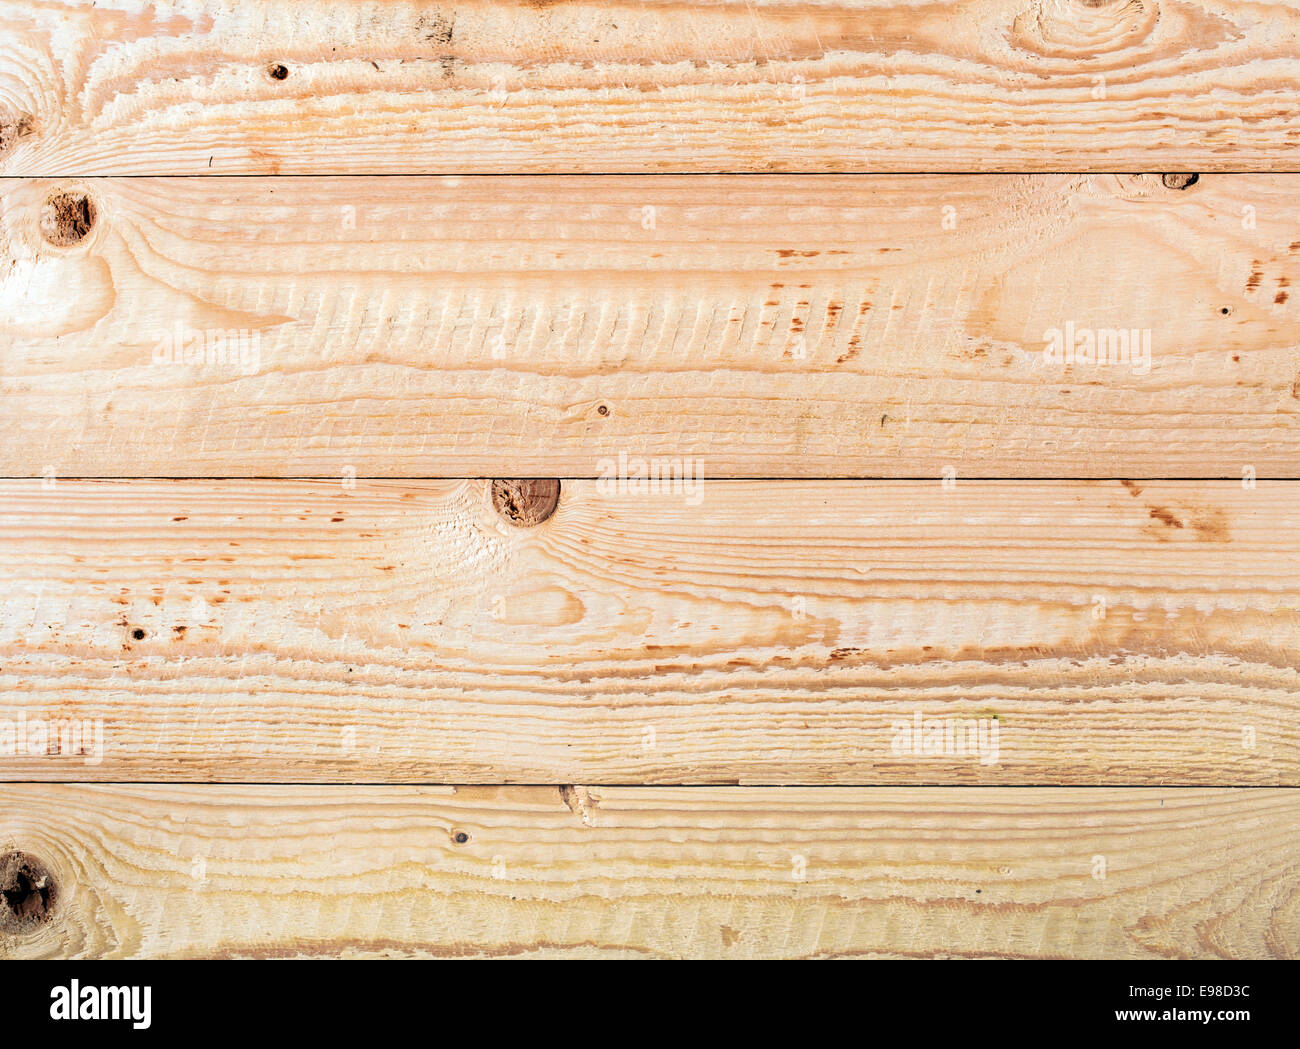 Close-up de un vacío de la superficie de madera rústica, tomada desde arriba Foto de stock